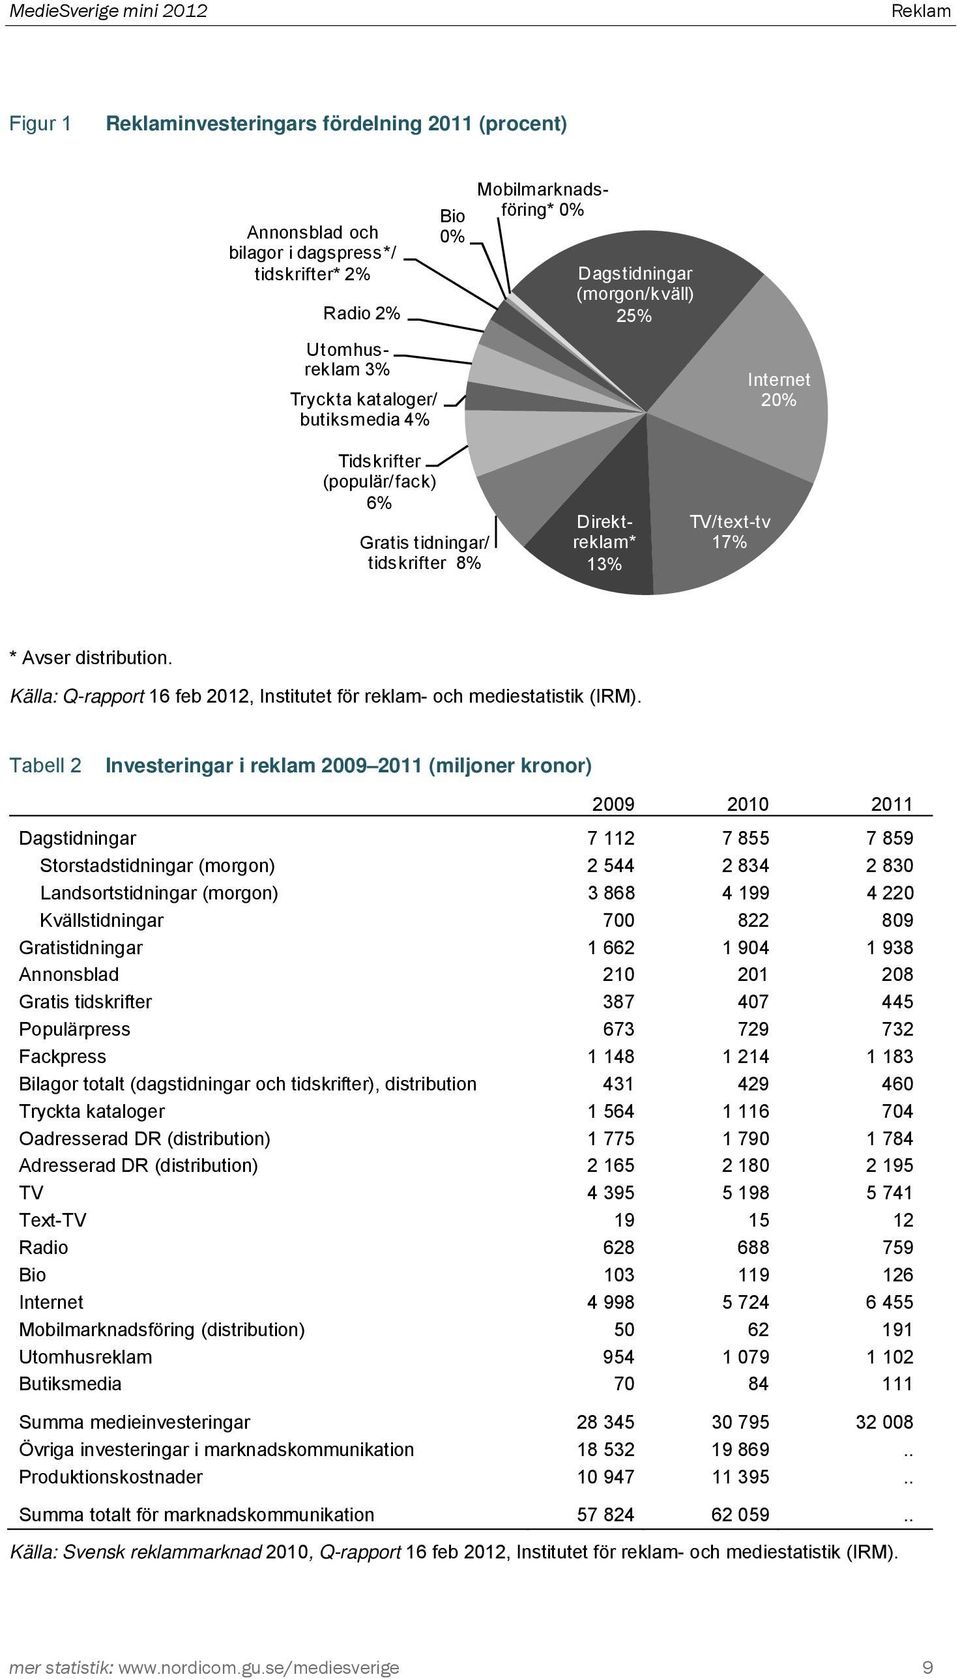 Källa: Q-rapport 16 feb 2012, Institutet för reklam- och mediestatistik (IRM).